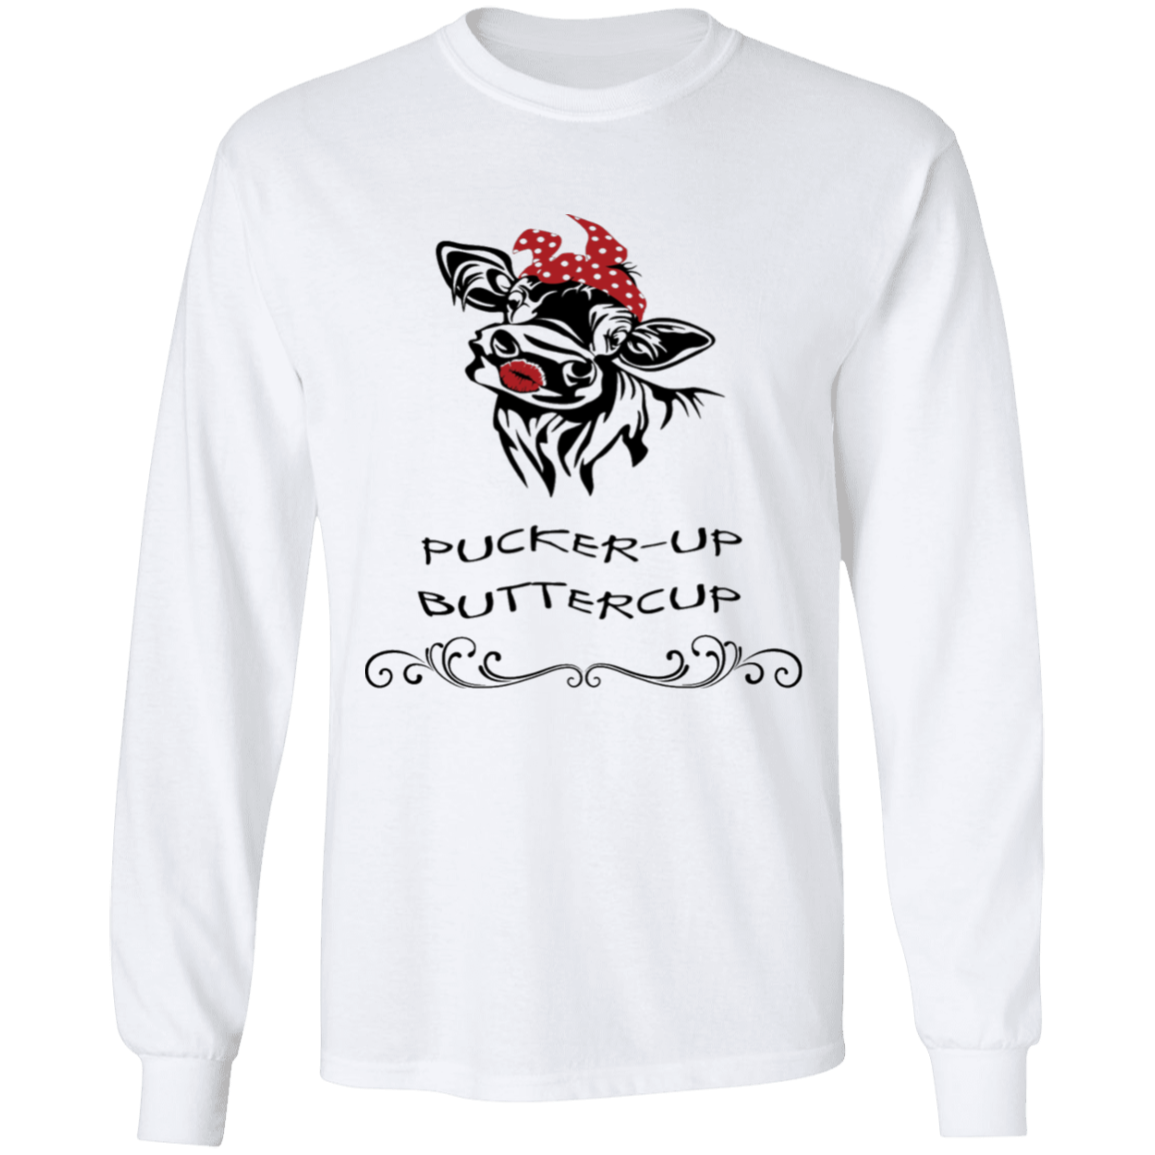 Pucker-up buttercup long sleeve t'shirt